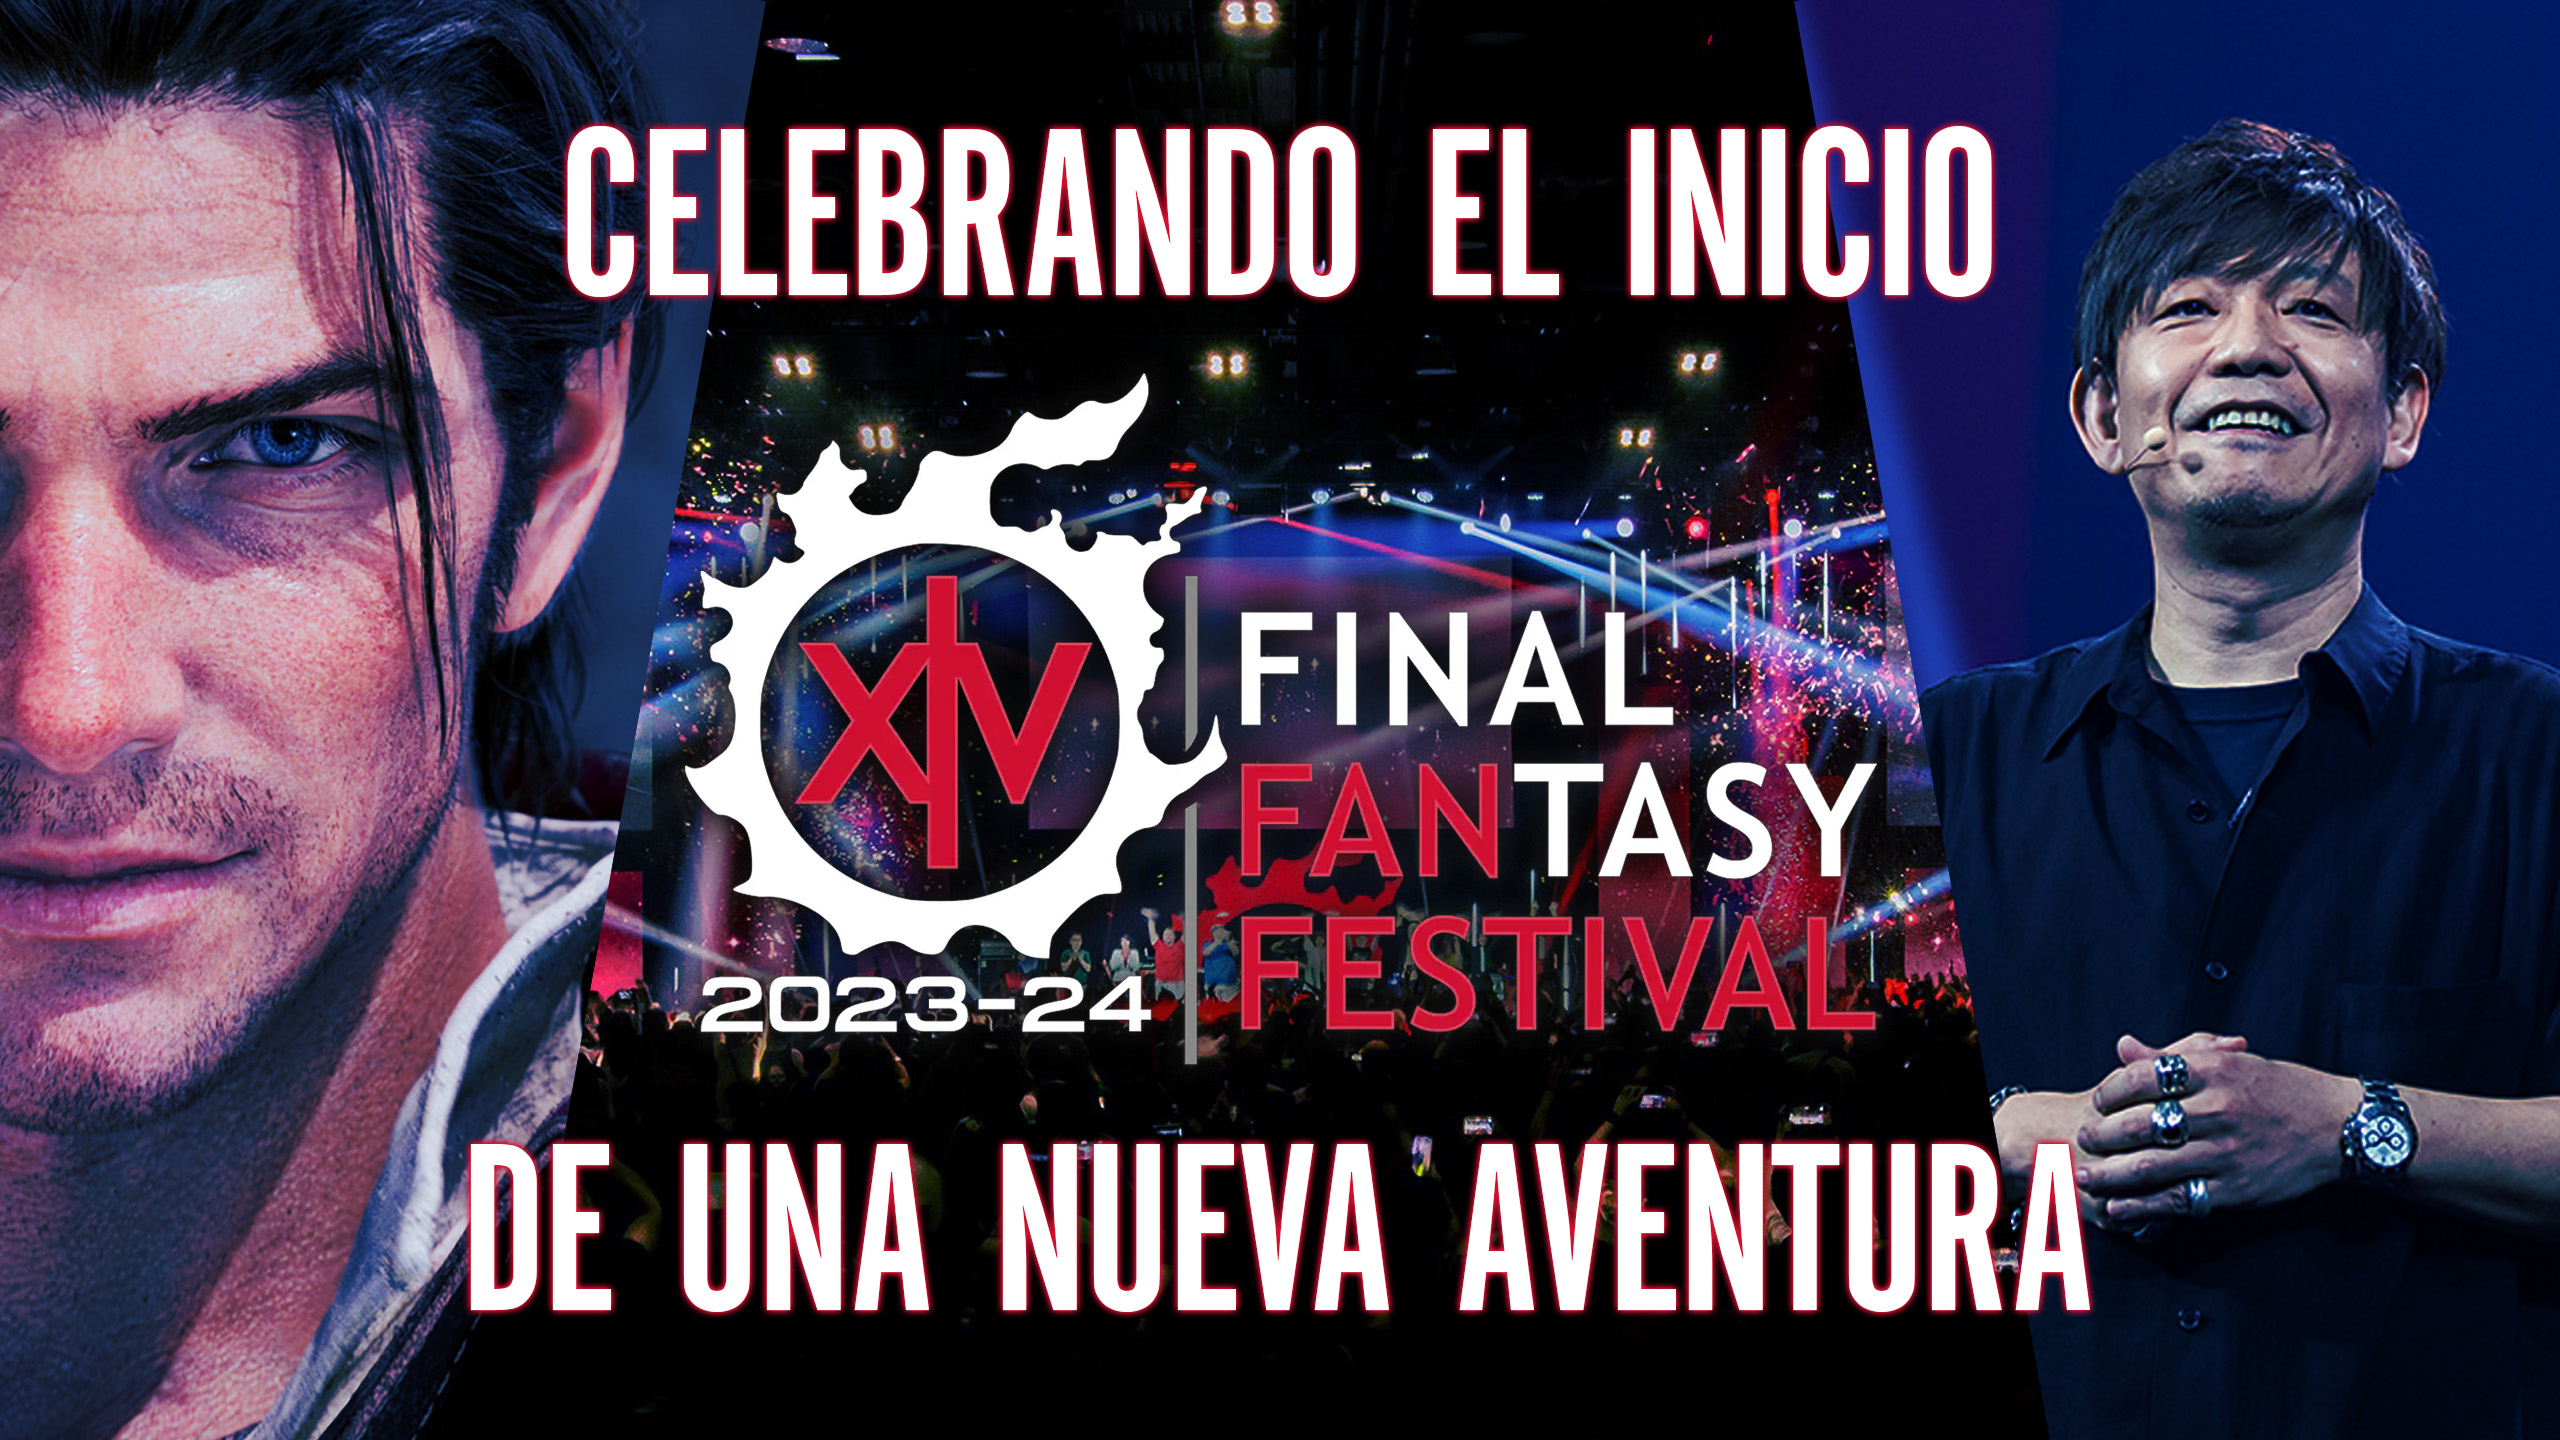 Final Fantasy XIV Fan Festival 2023 – Celebrando el Inicio de una Nueva Aventura